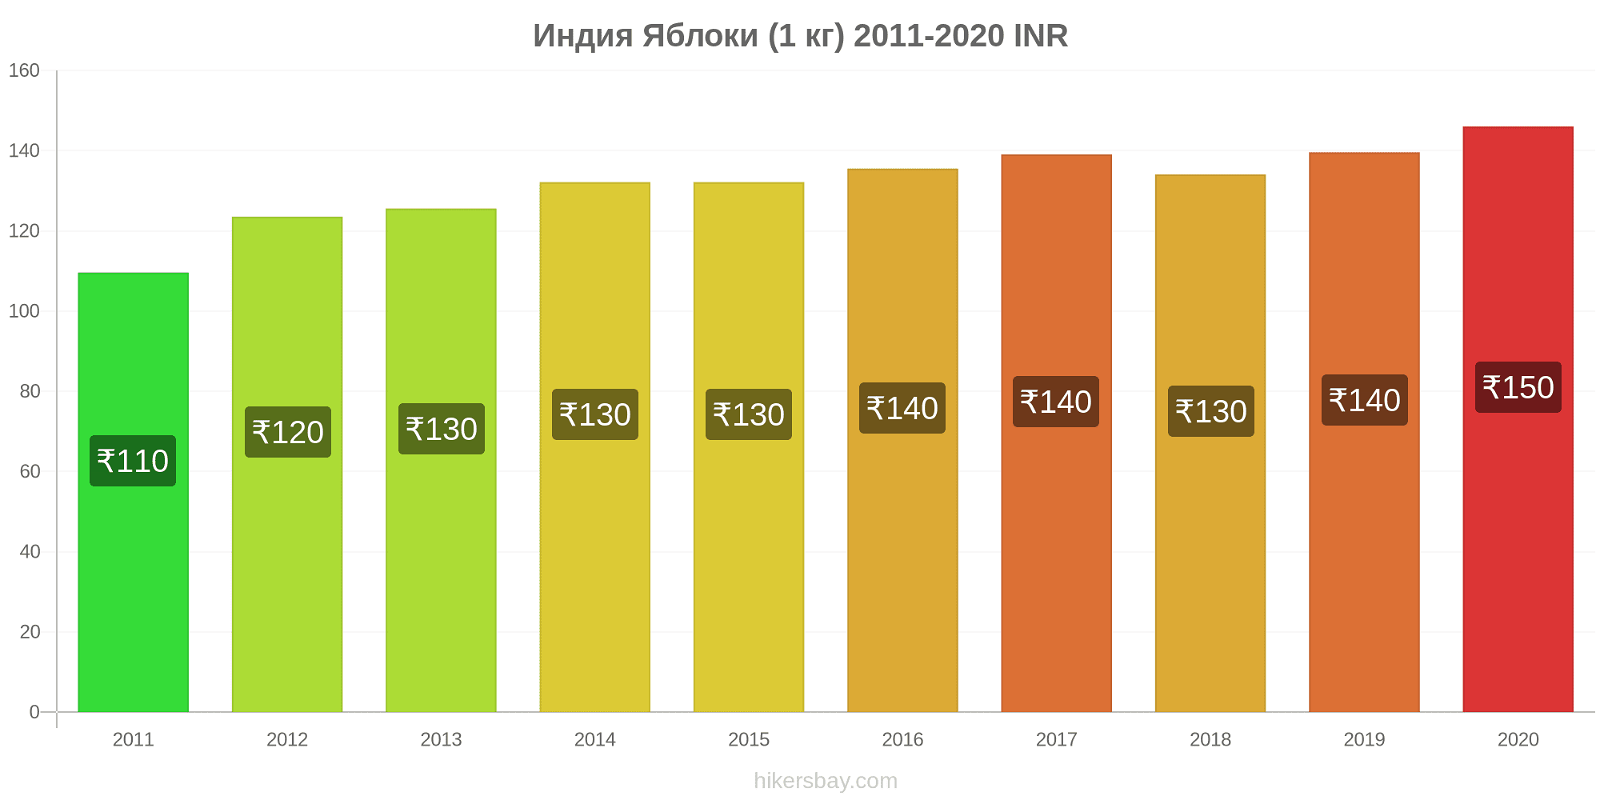 Индия изменения цен Яблоки (1 кг) hikersbay.com